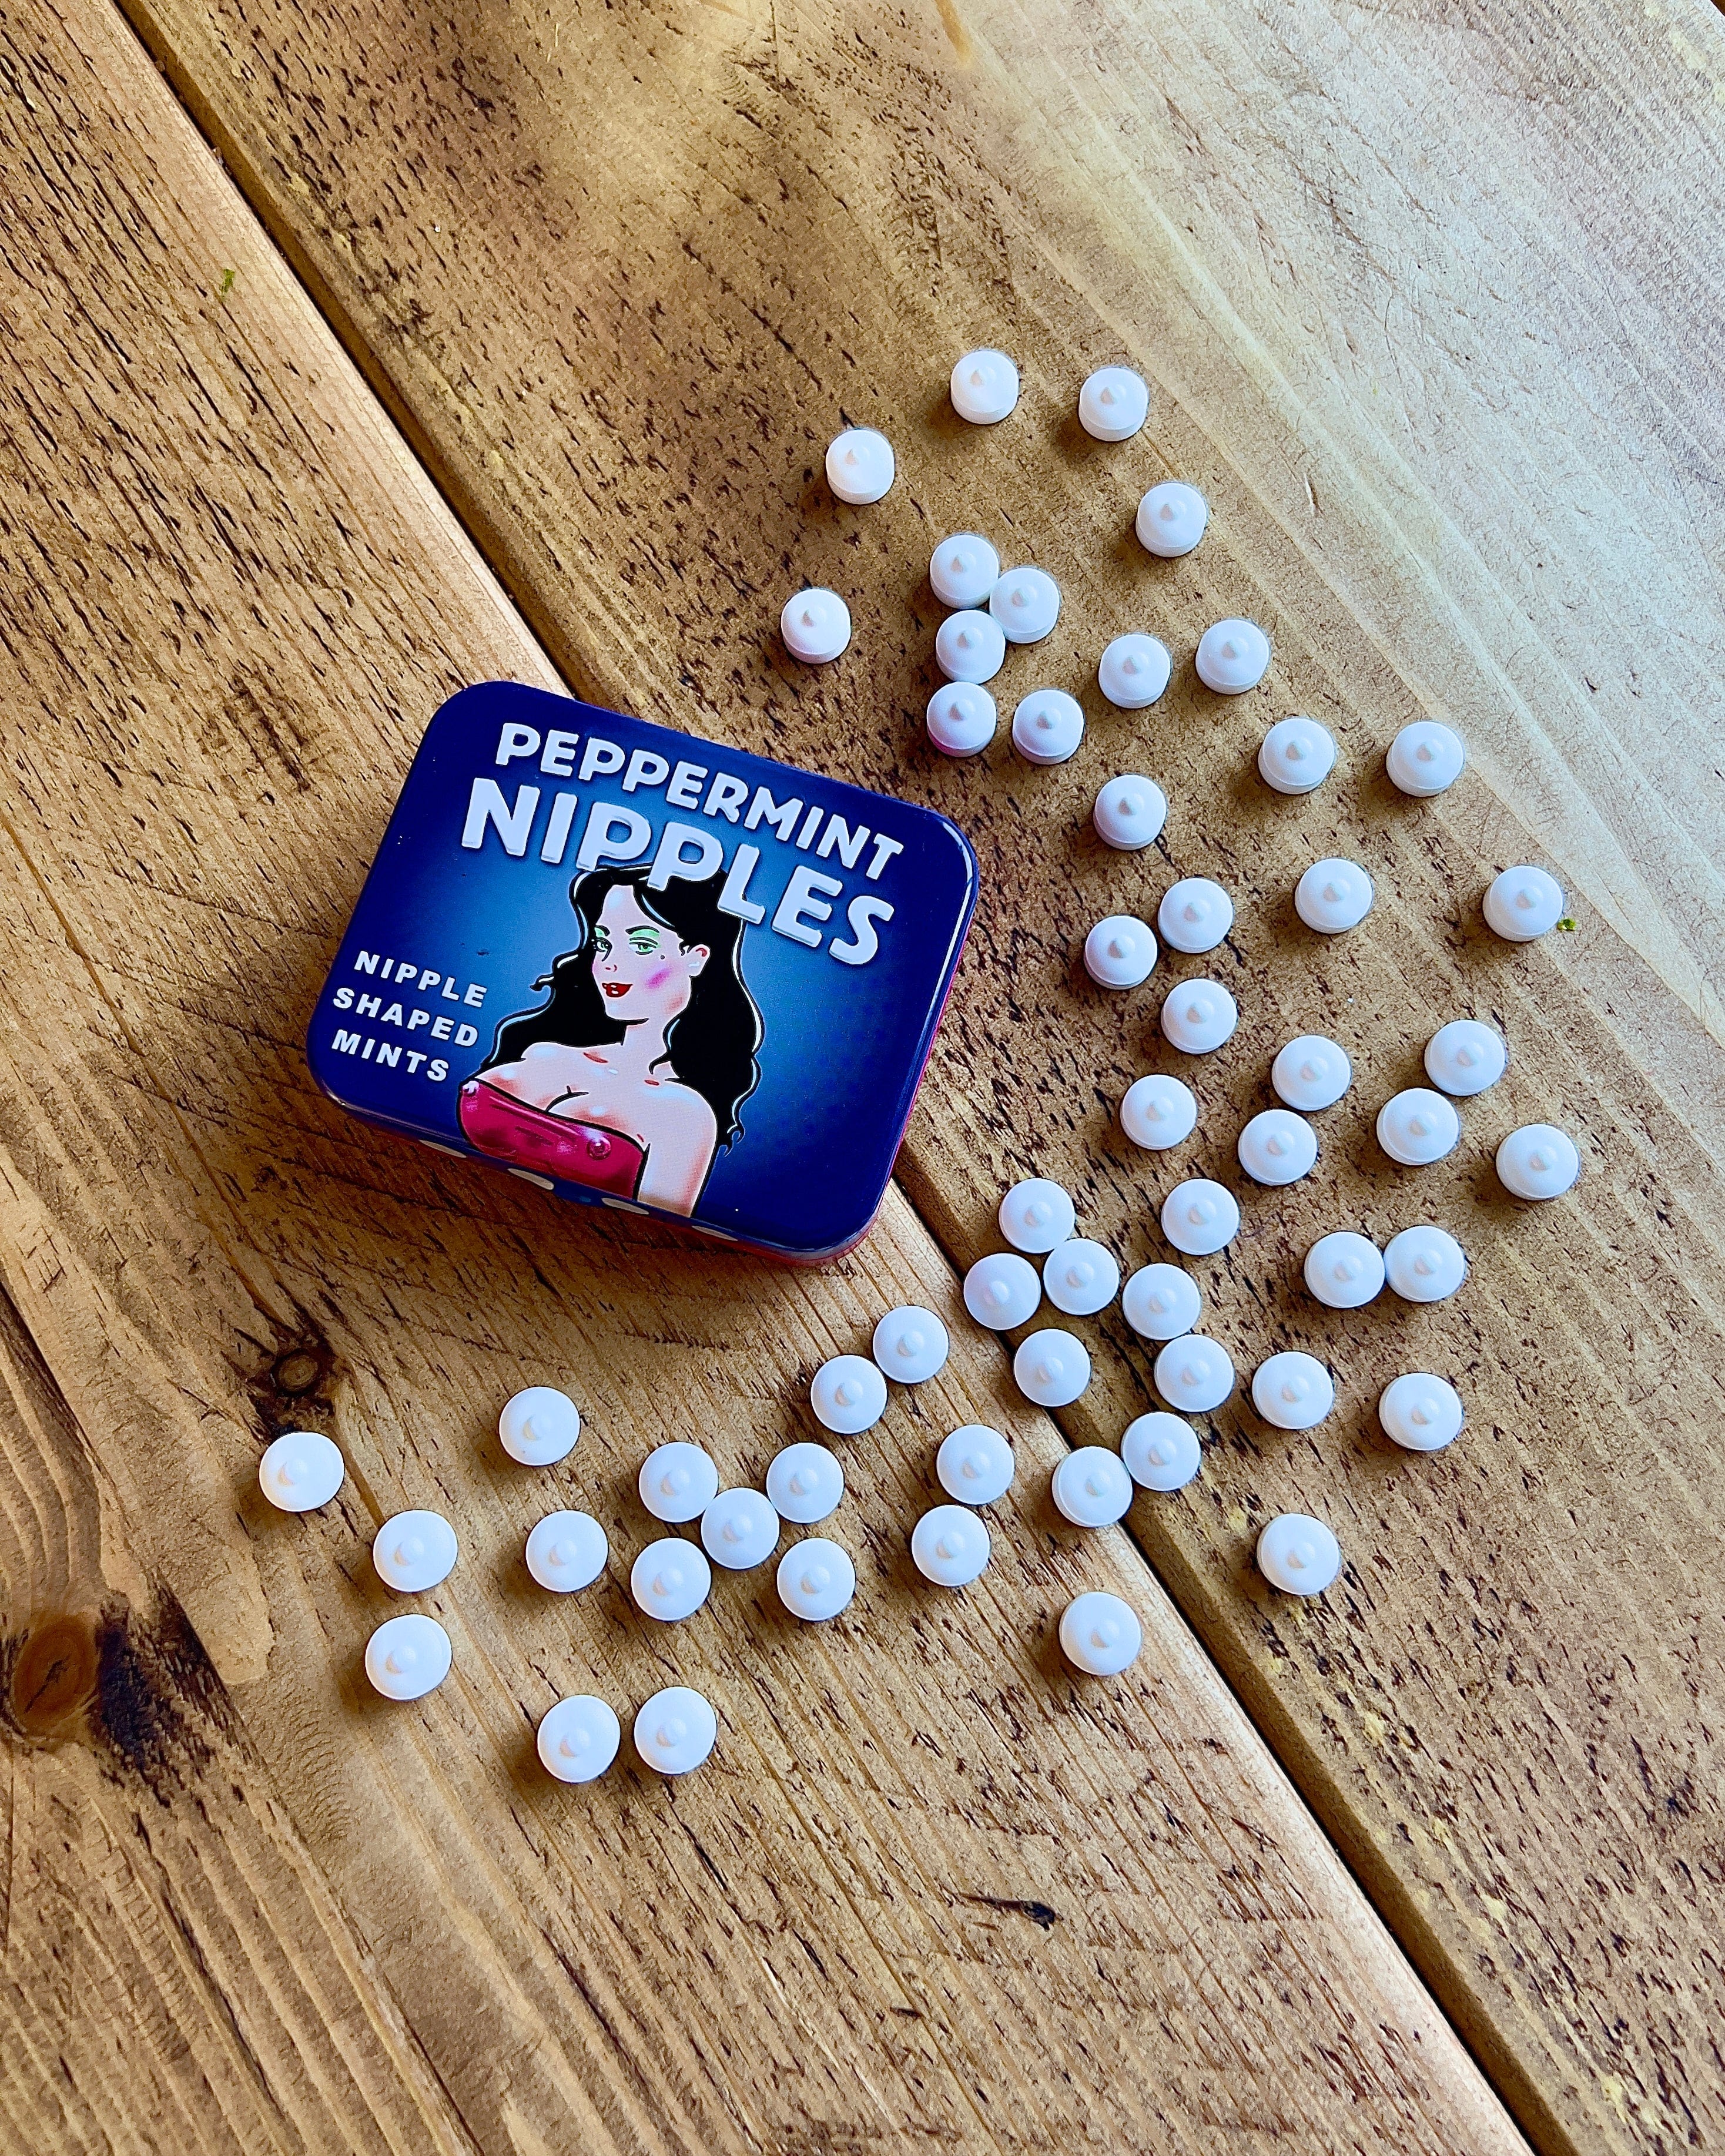 Peppermint Nipples Mints